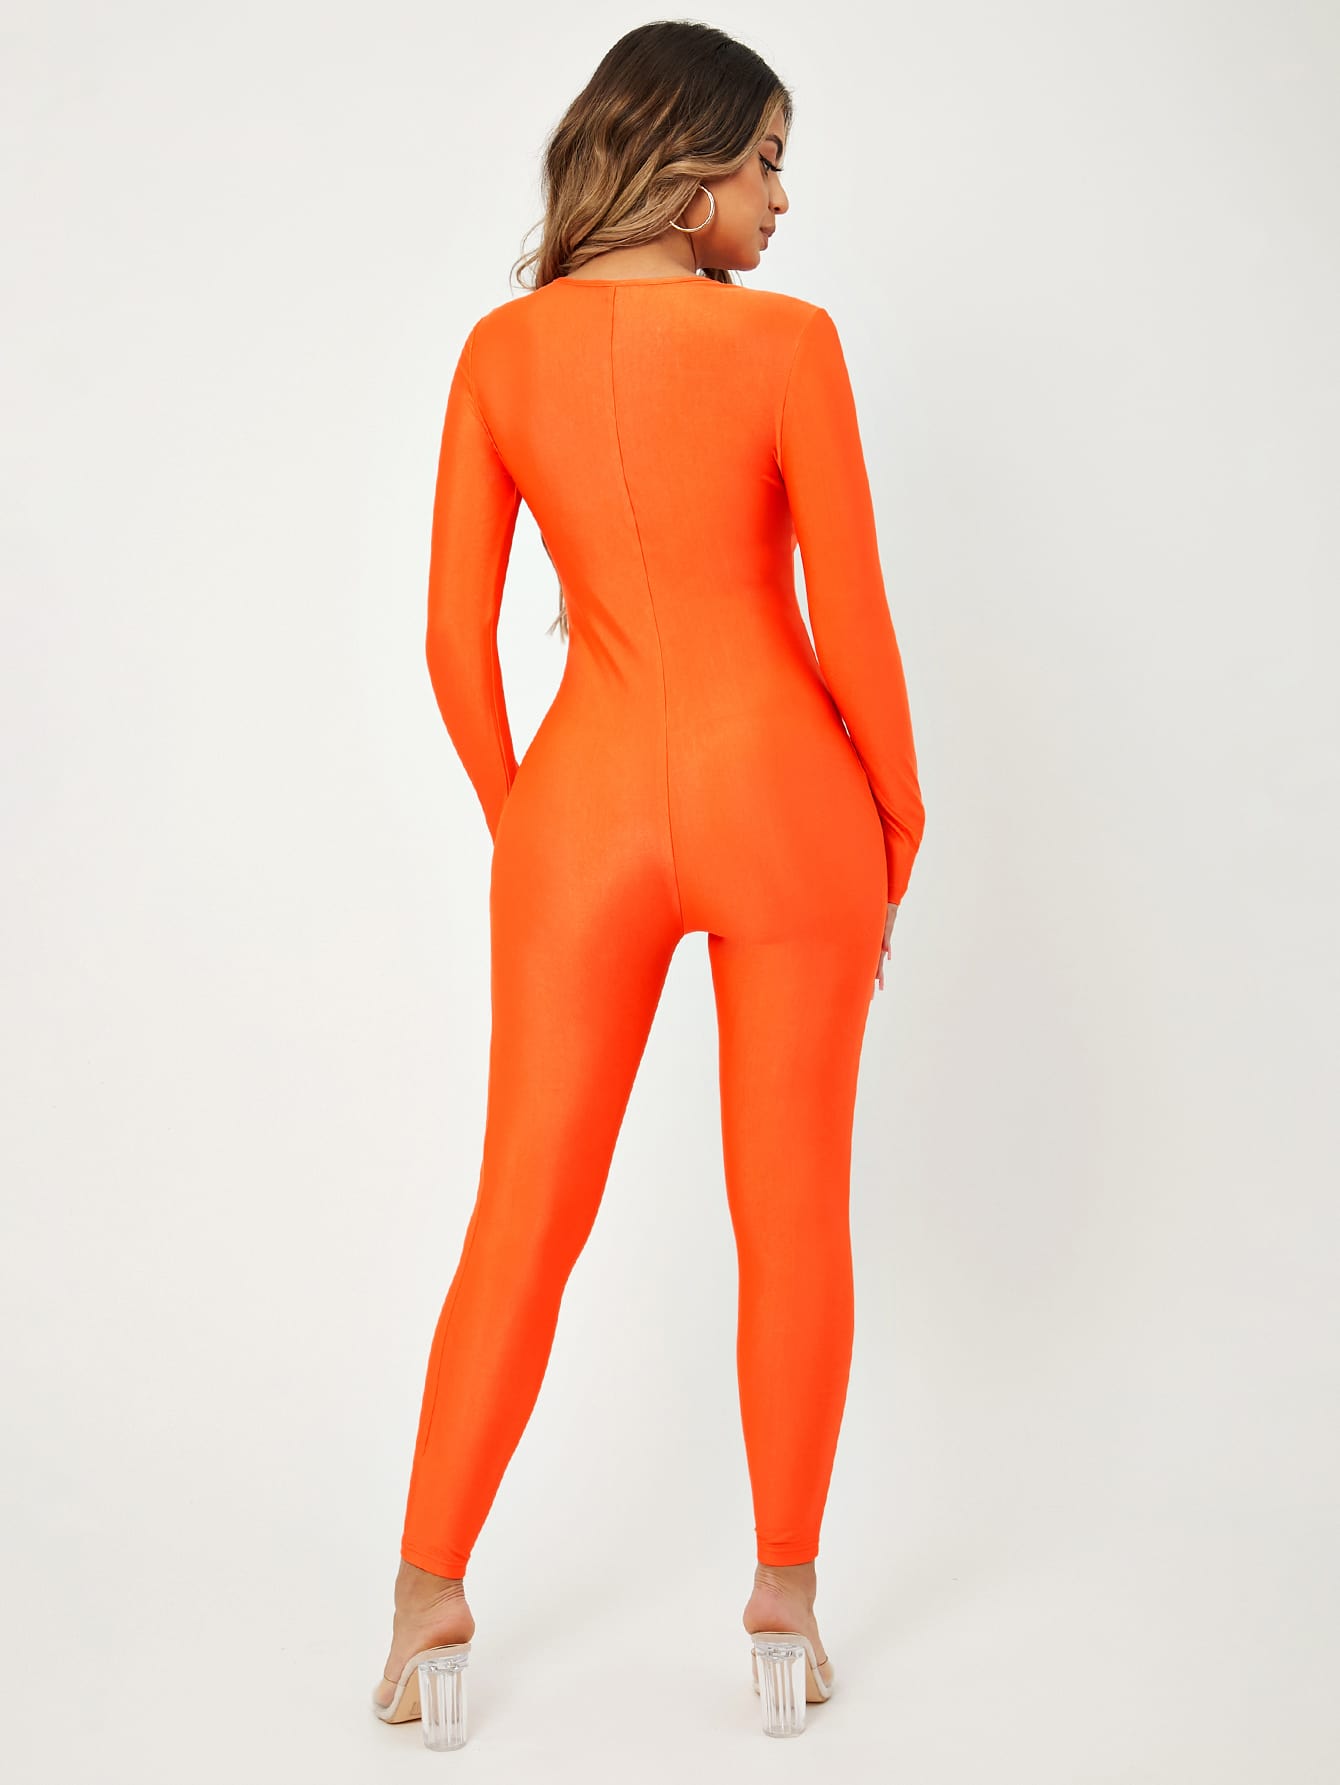 Neon Orange Solid V Neck Unitard Jumpsuit